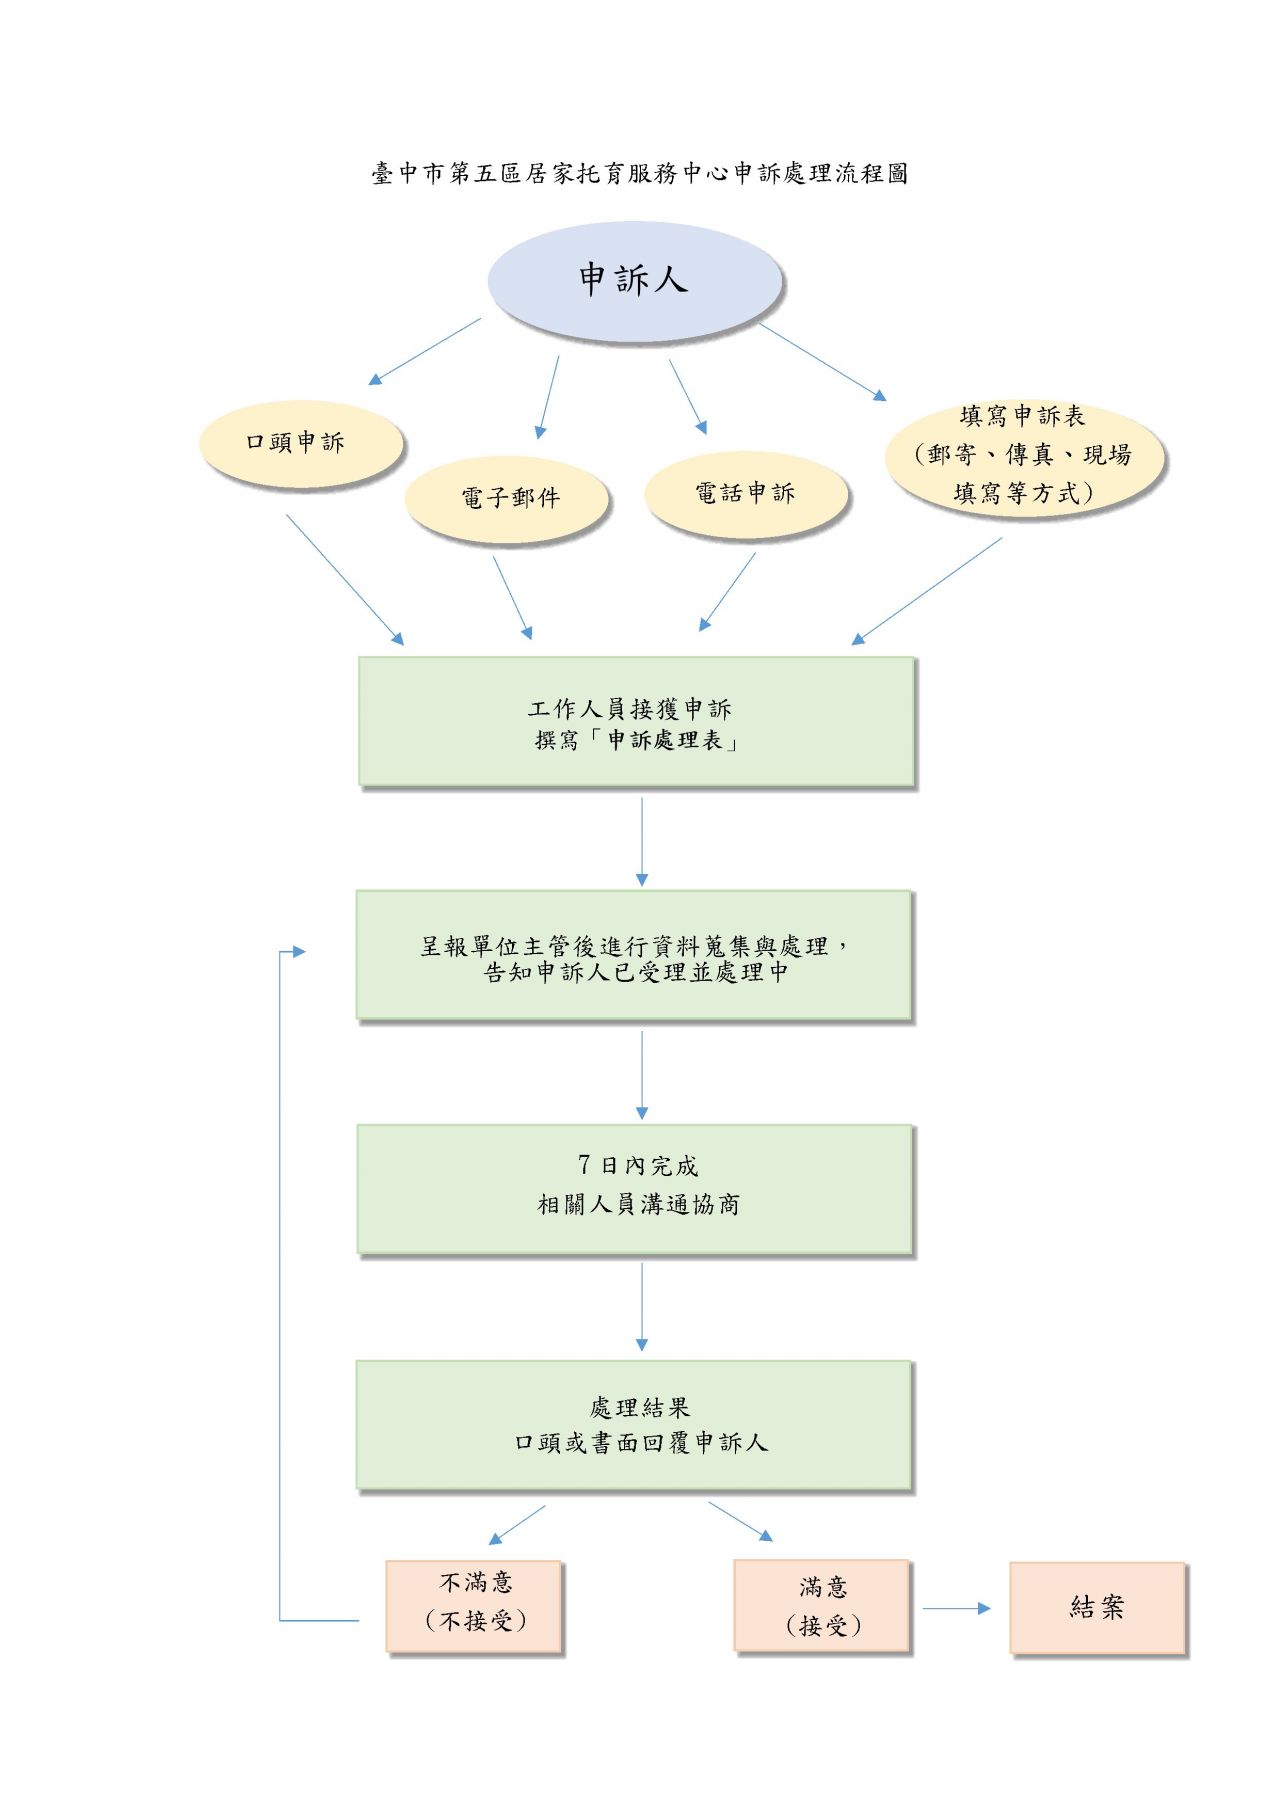 臺中市第五區居家托育服務中心申訴處理流程圖